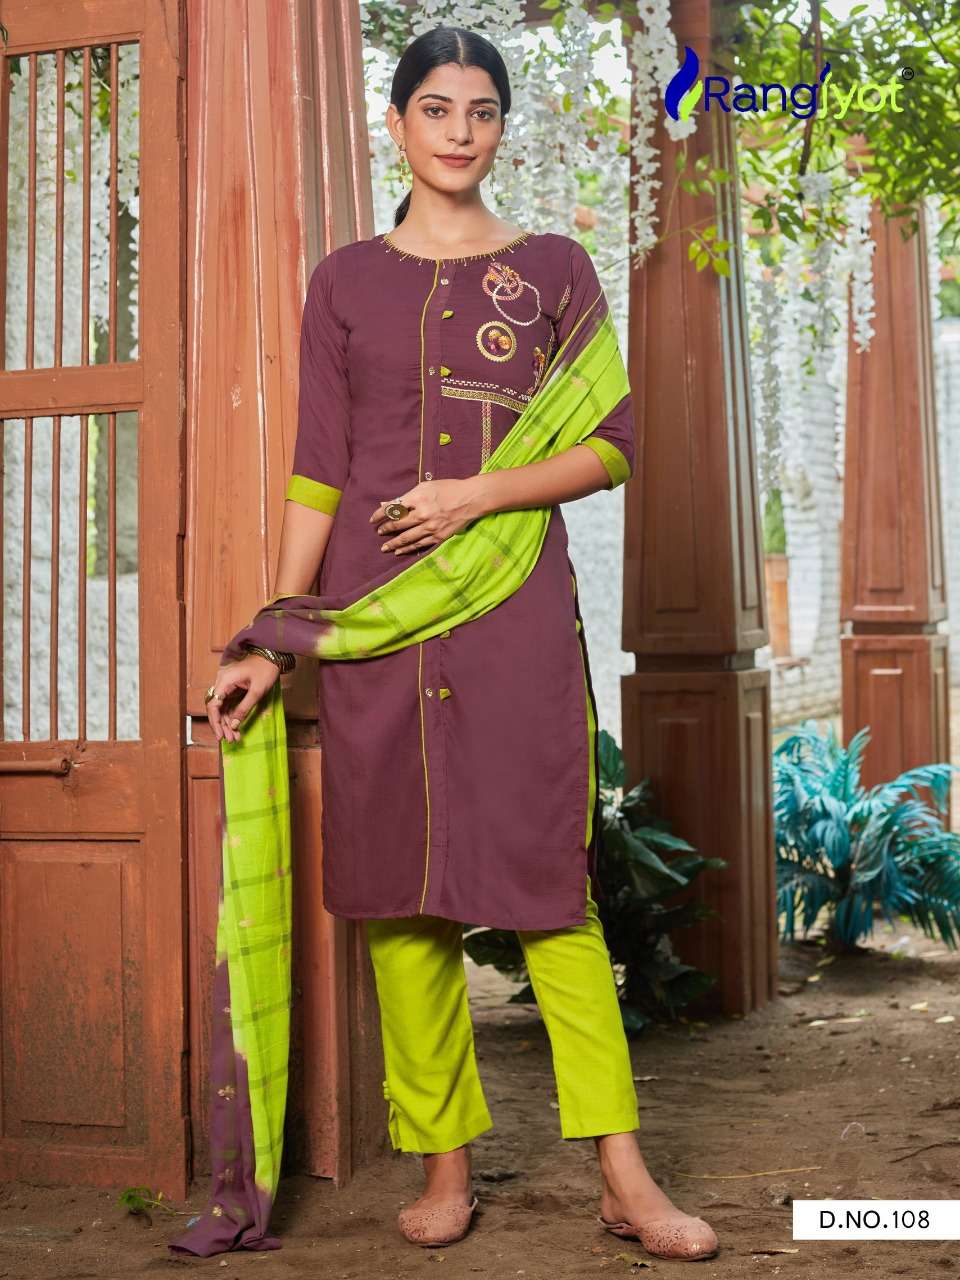 Chitra Vol 1 By Rangjyot Maska Silk Designer 3 Pcs Wholesale Supplier Dealer Trader Lowest Price Salwar Suit Catalog Set